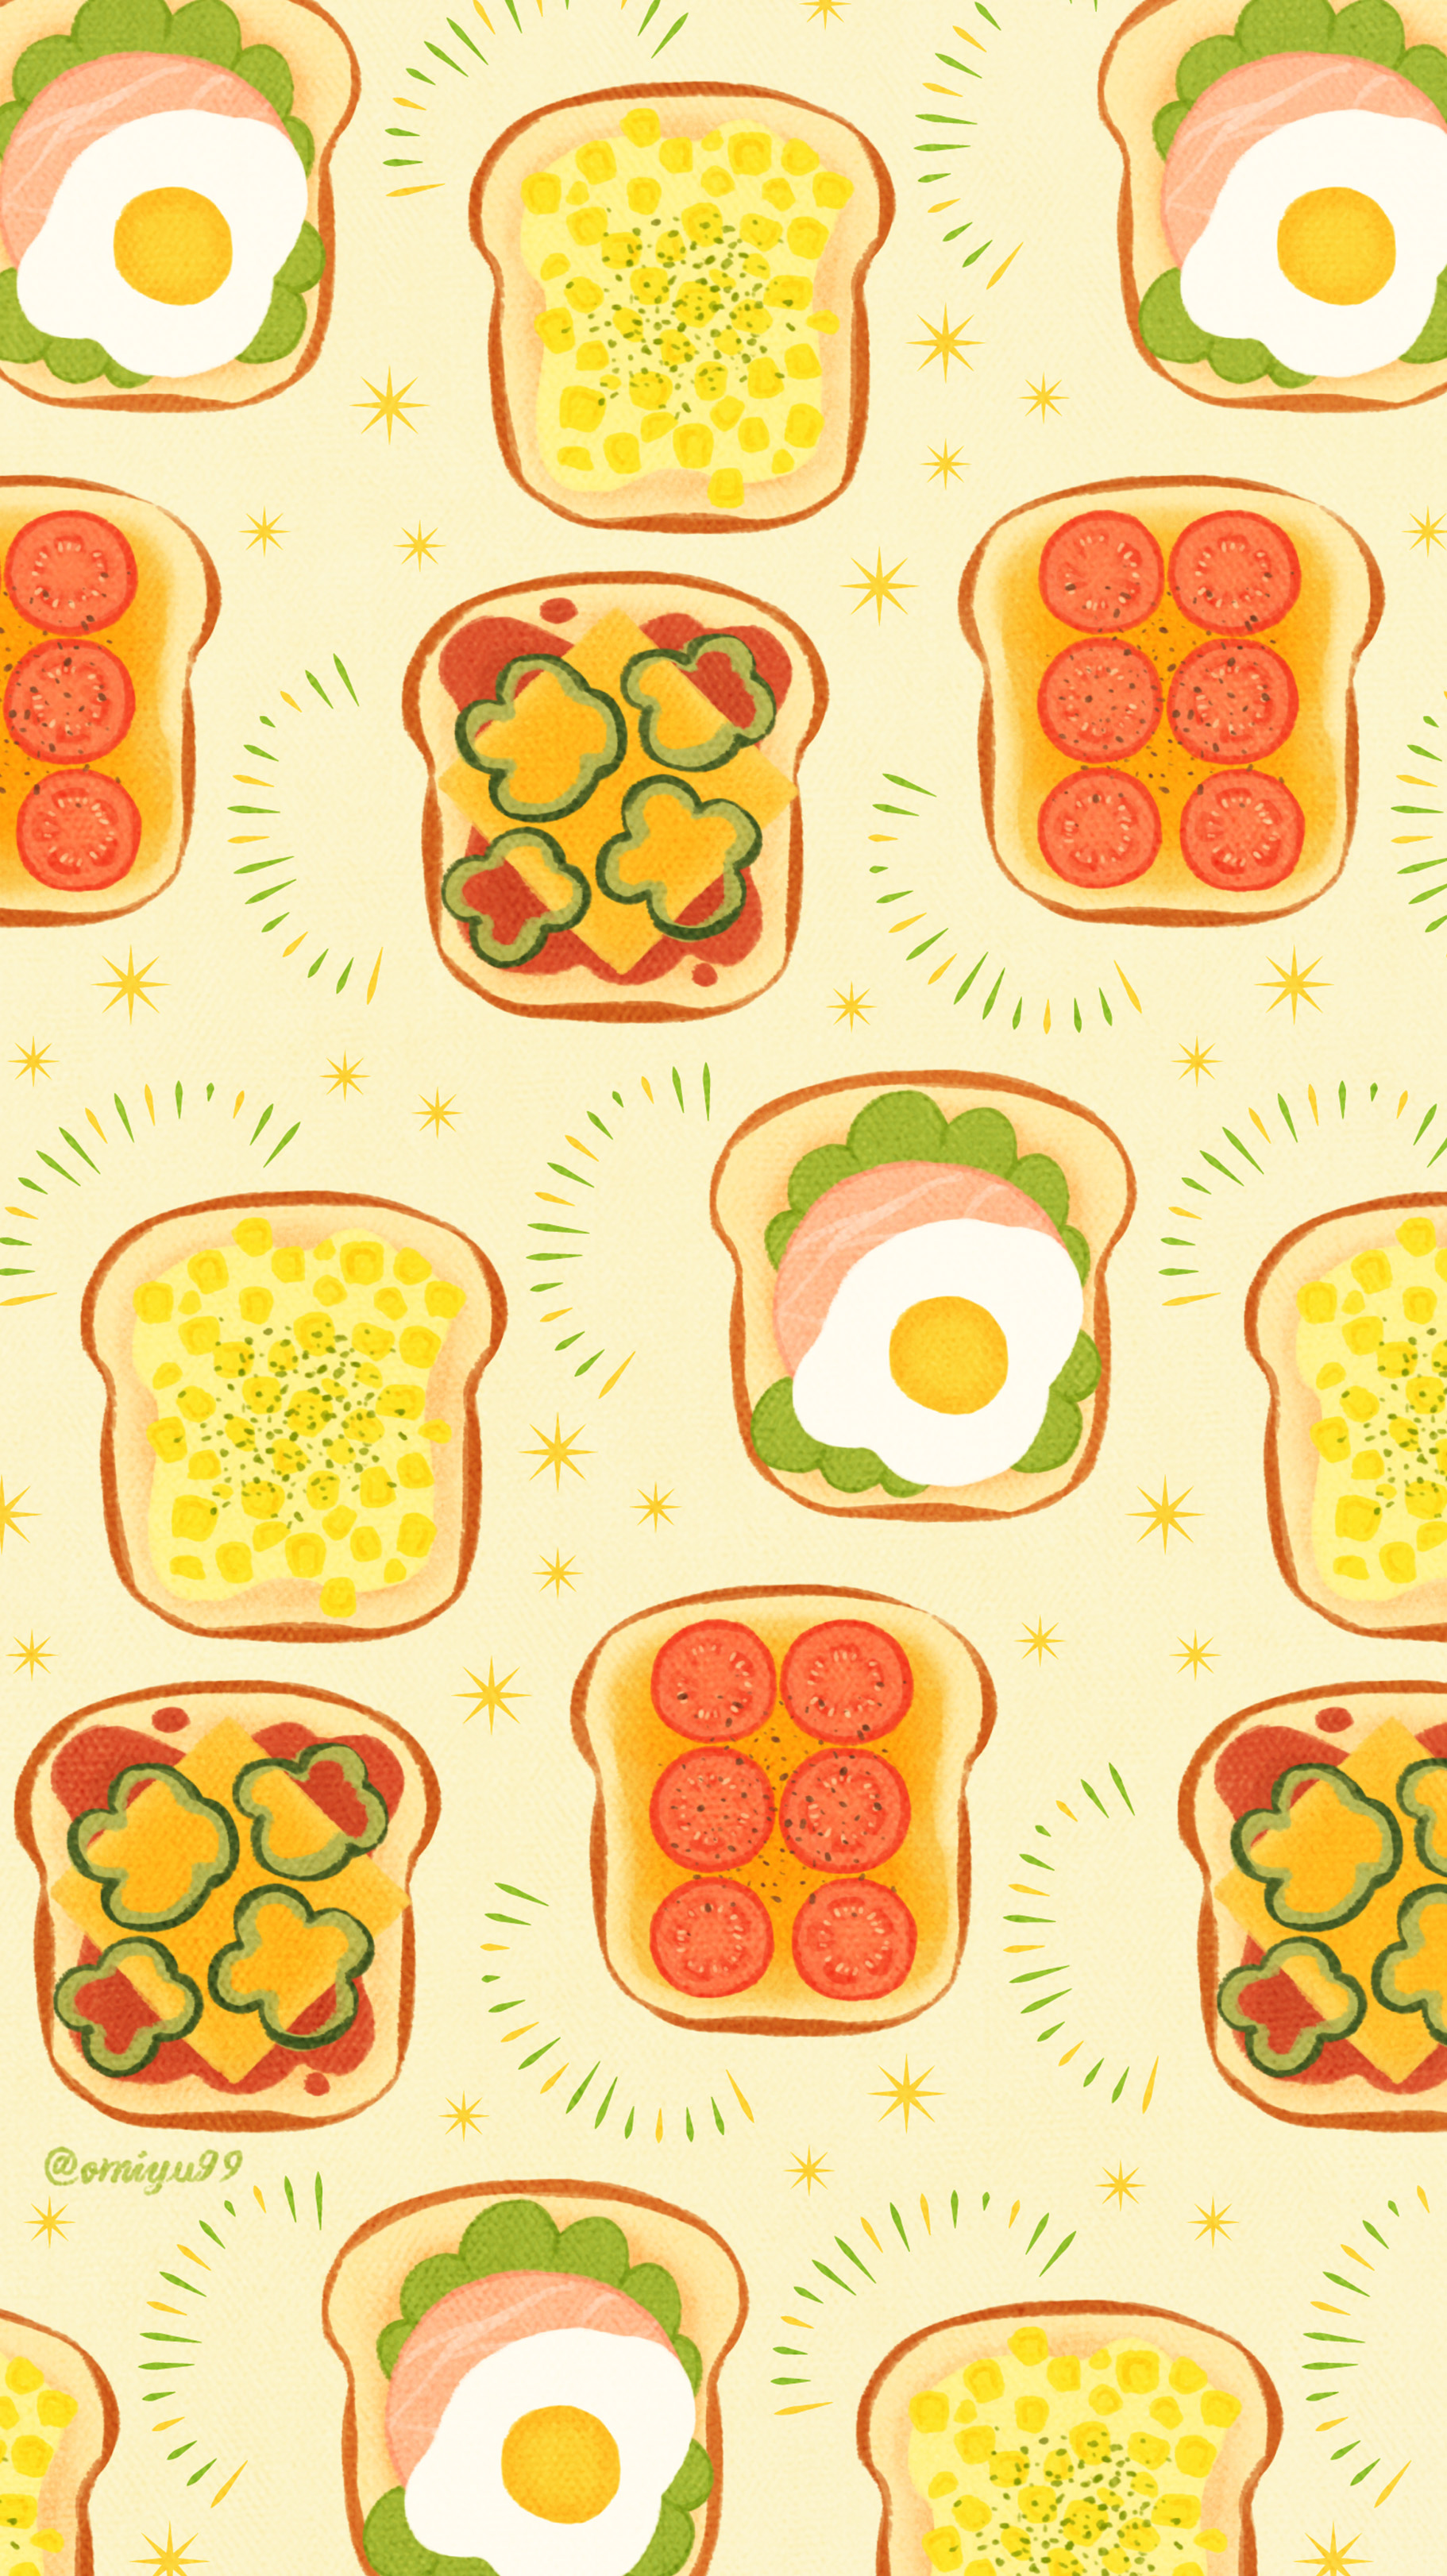 Omiyu 在 Twitter 上 おやさいトーストな壁紙 Illust Illustration トースト Toast イラスト Iphone壁紙 壁紙 食べ物 T Co Uljeavna5n Twitter